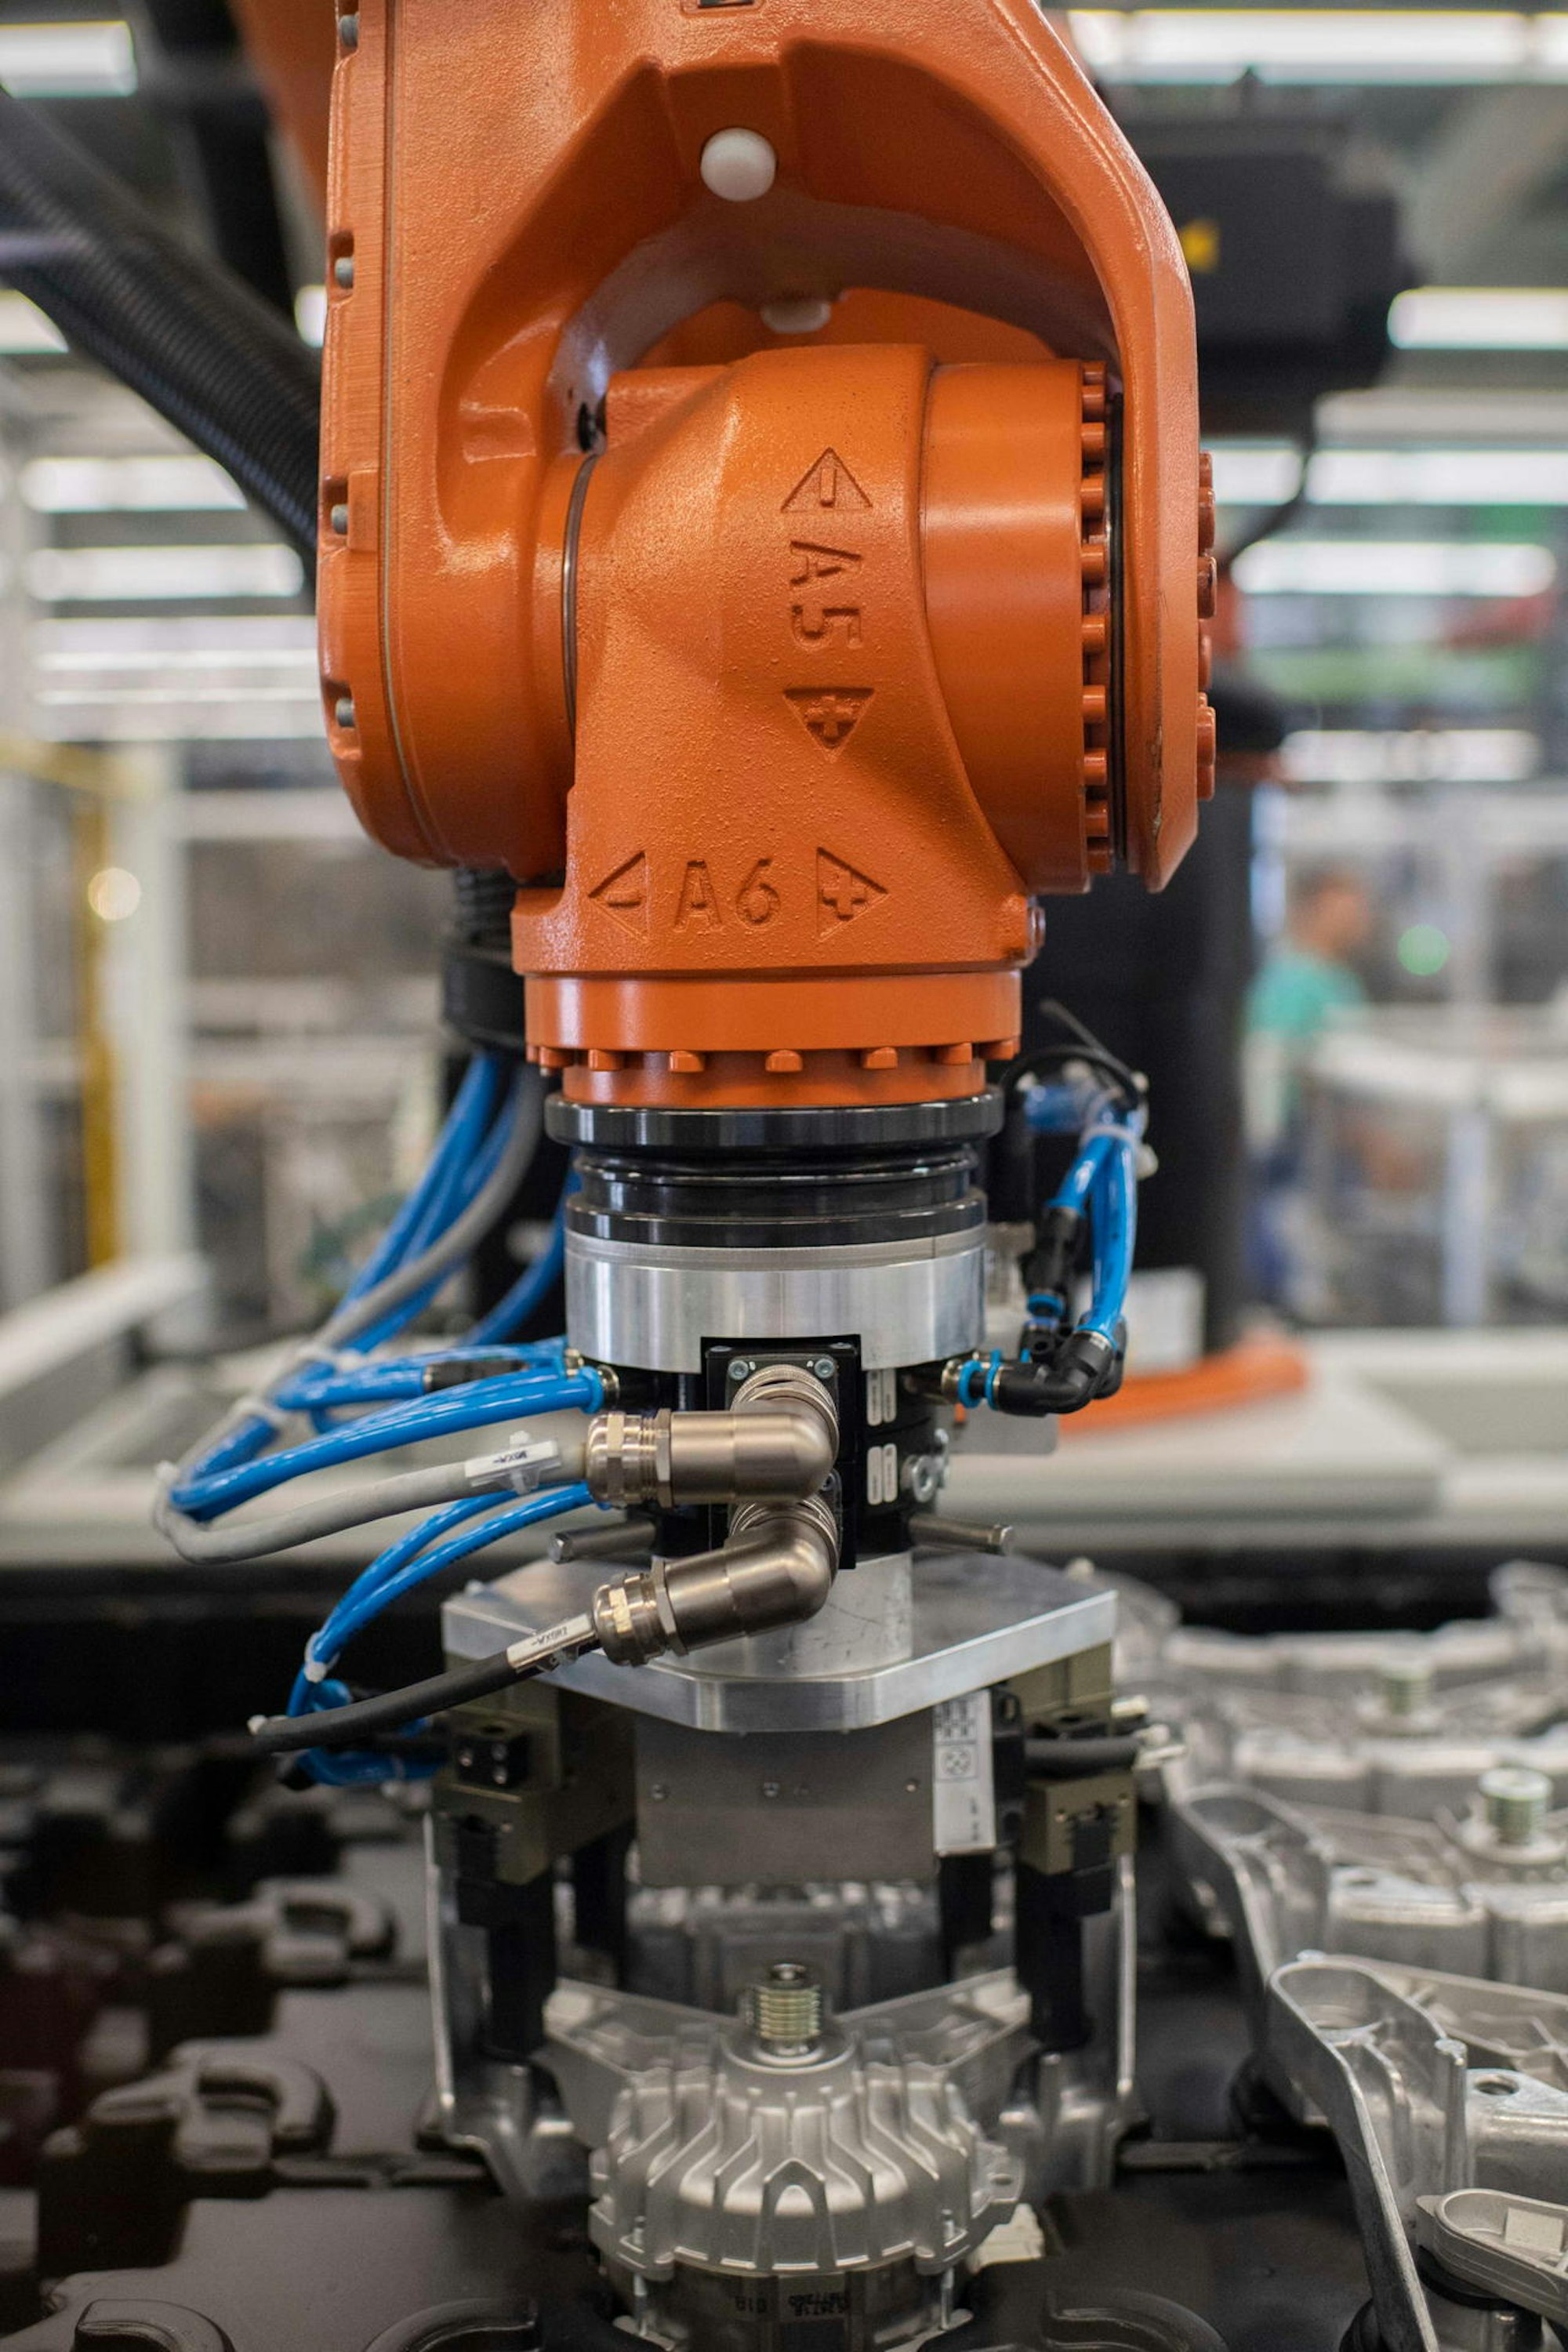 Produktion auf hohem technischen Niveau: Präzise und schnell werden Teile – auch mit Hilfe von Roboterarmen – zusammengesetzt.